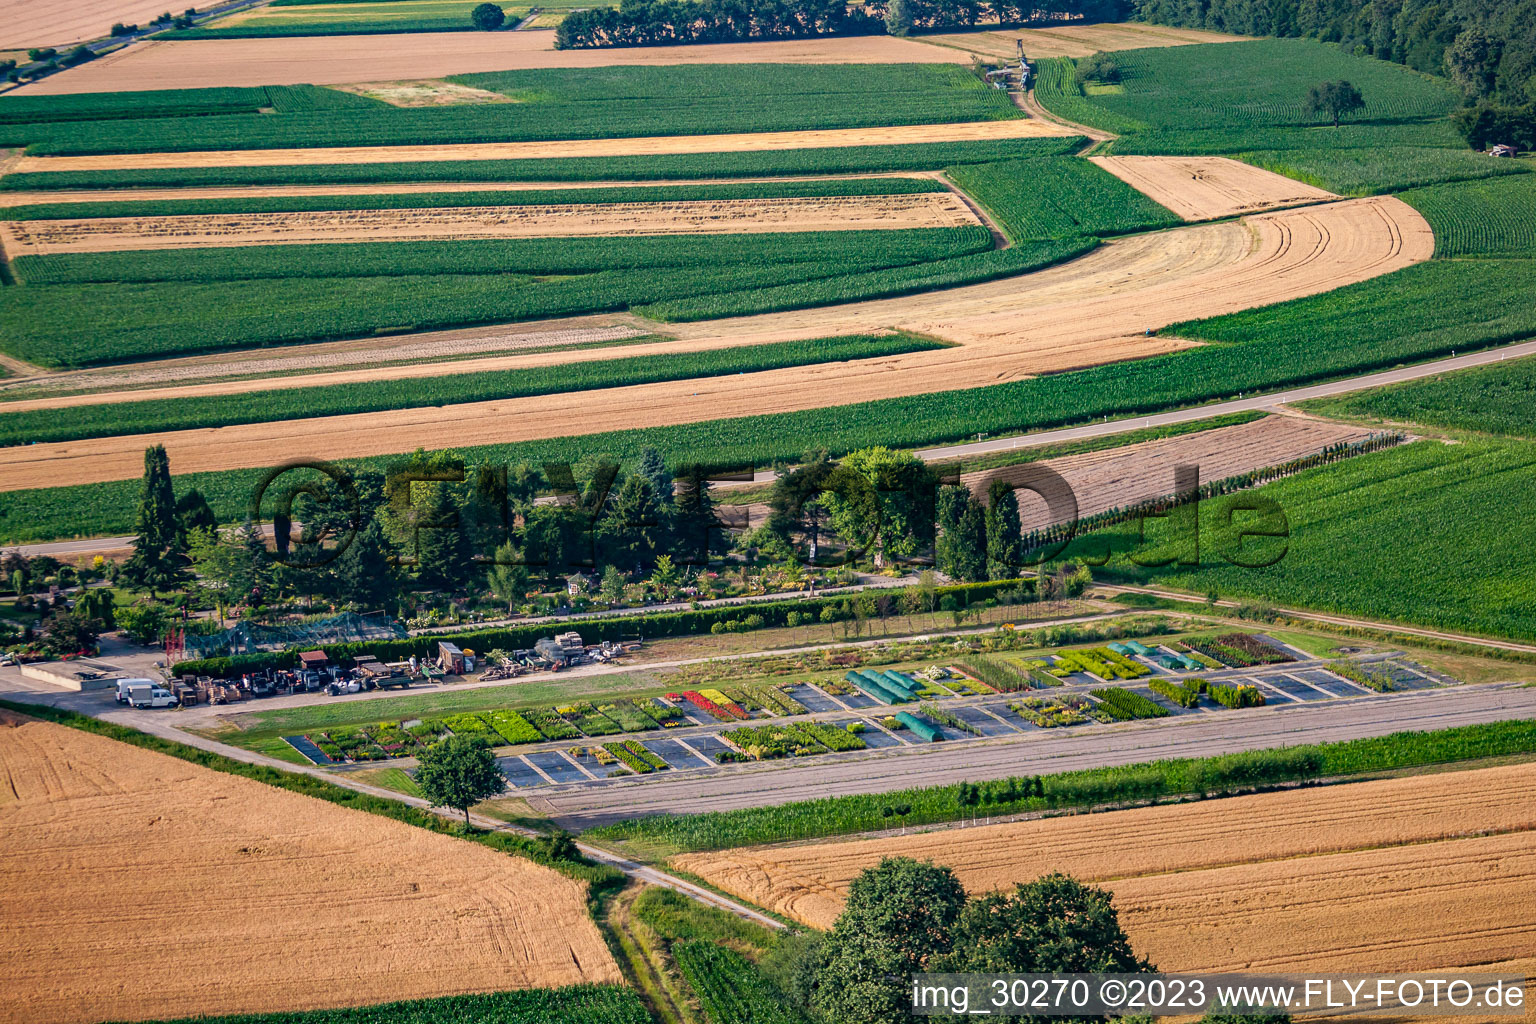 Temps de jardin noir à le quartier Bodersweier in Kehl dans le département Bade-Wurtemberg, Allemagne vu d'un drone